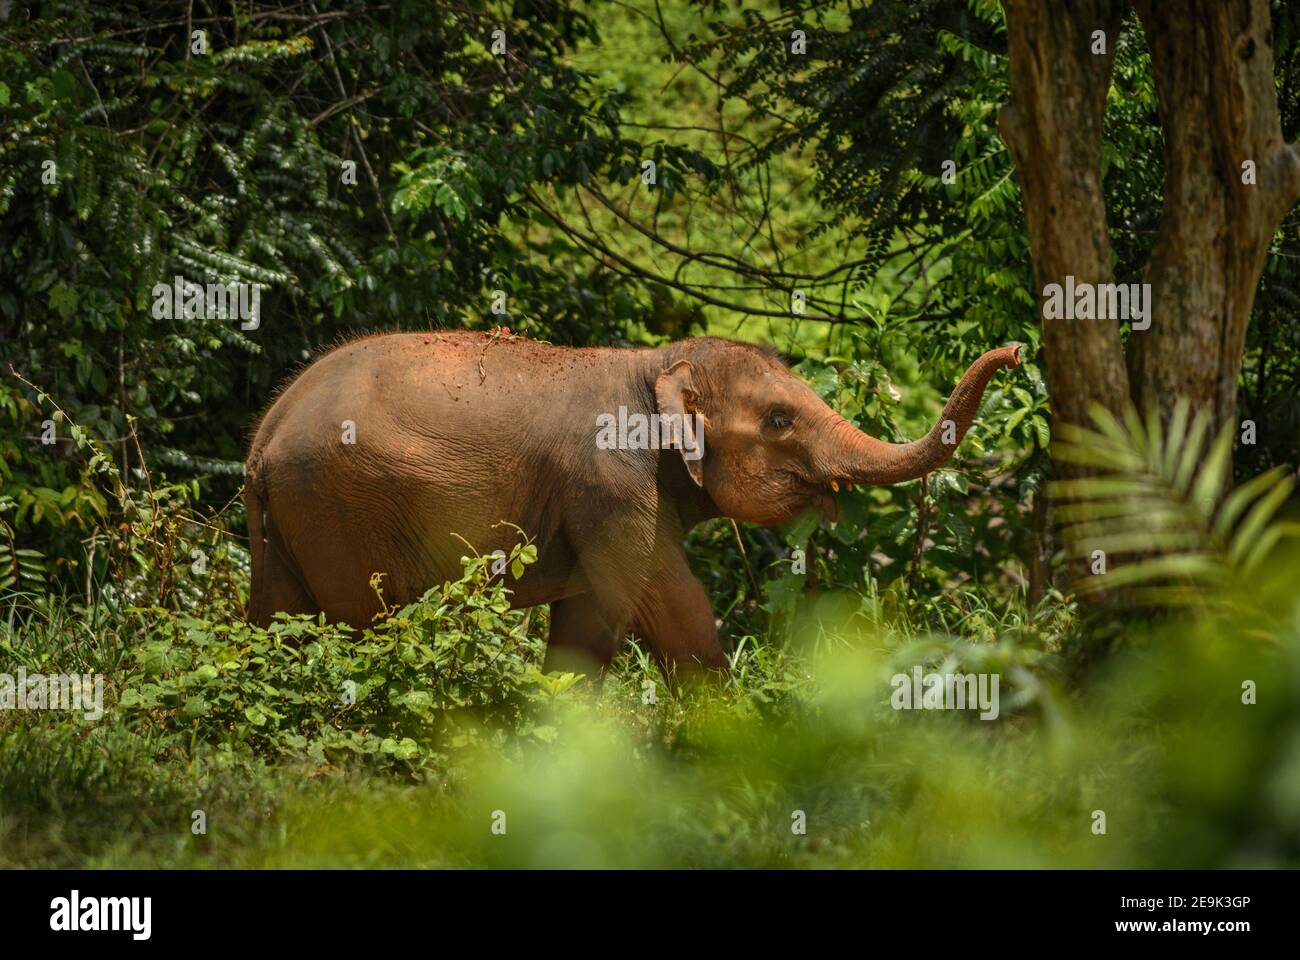 Eléphant asiatique - Elepha maximus, jeune éléphant asiatique, mammifère emblématique d'Asie, Thaïlande. Banque D'Images